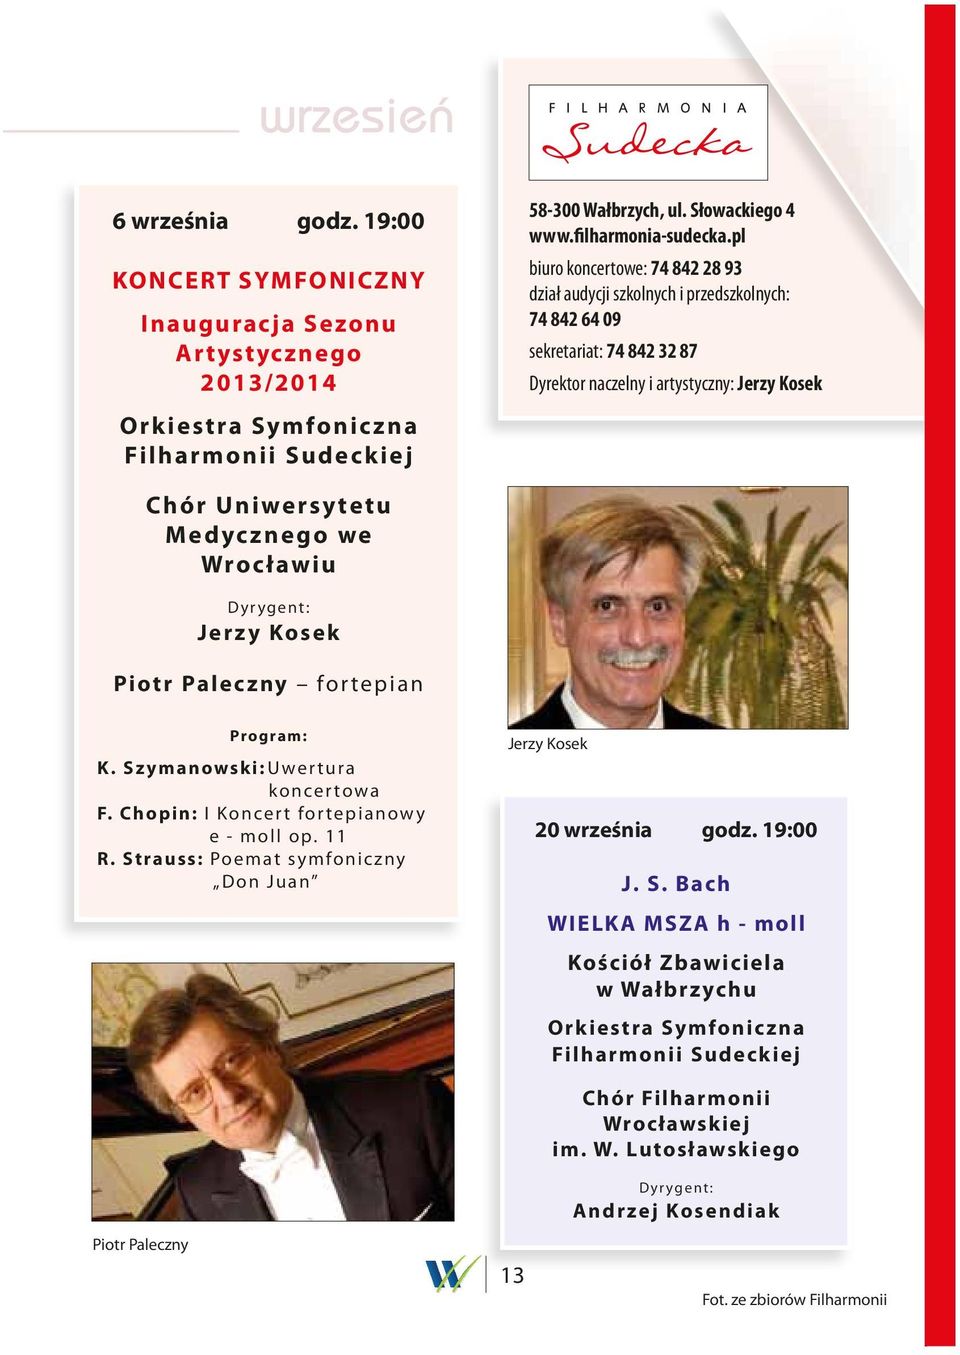 Wrocławiu Dyrygent: Jerzy Kosek Piotr Paleczny fortepian Program: K. Szymanowski: Uwertura koncertowa F. Chopin: I Koncert fortepianowy e - moll op. 11 R.